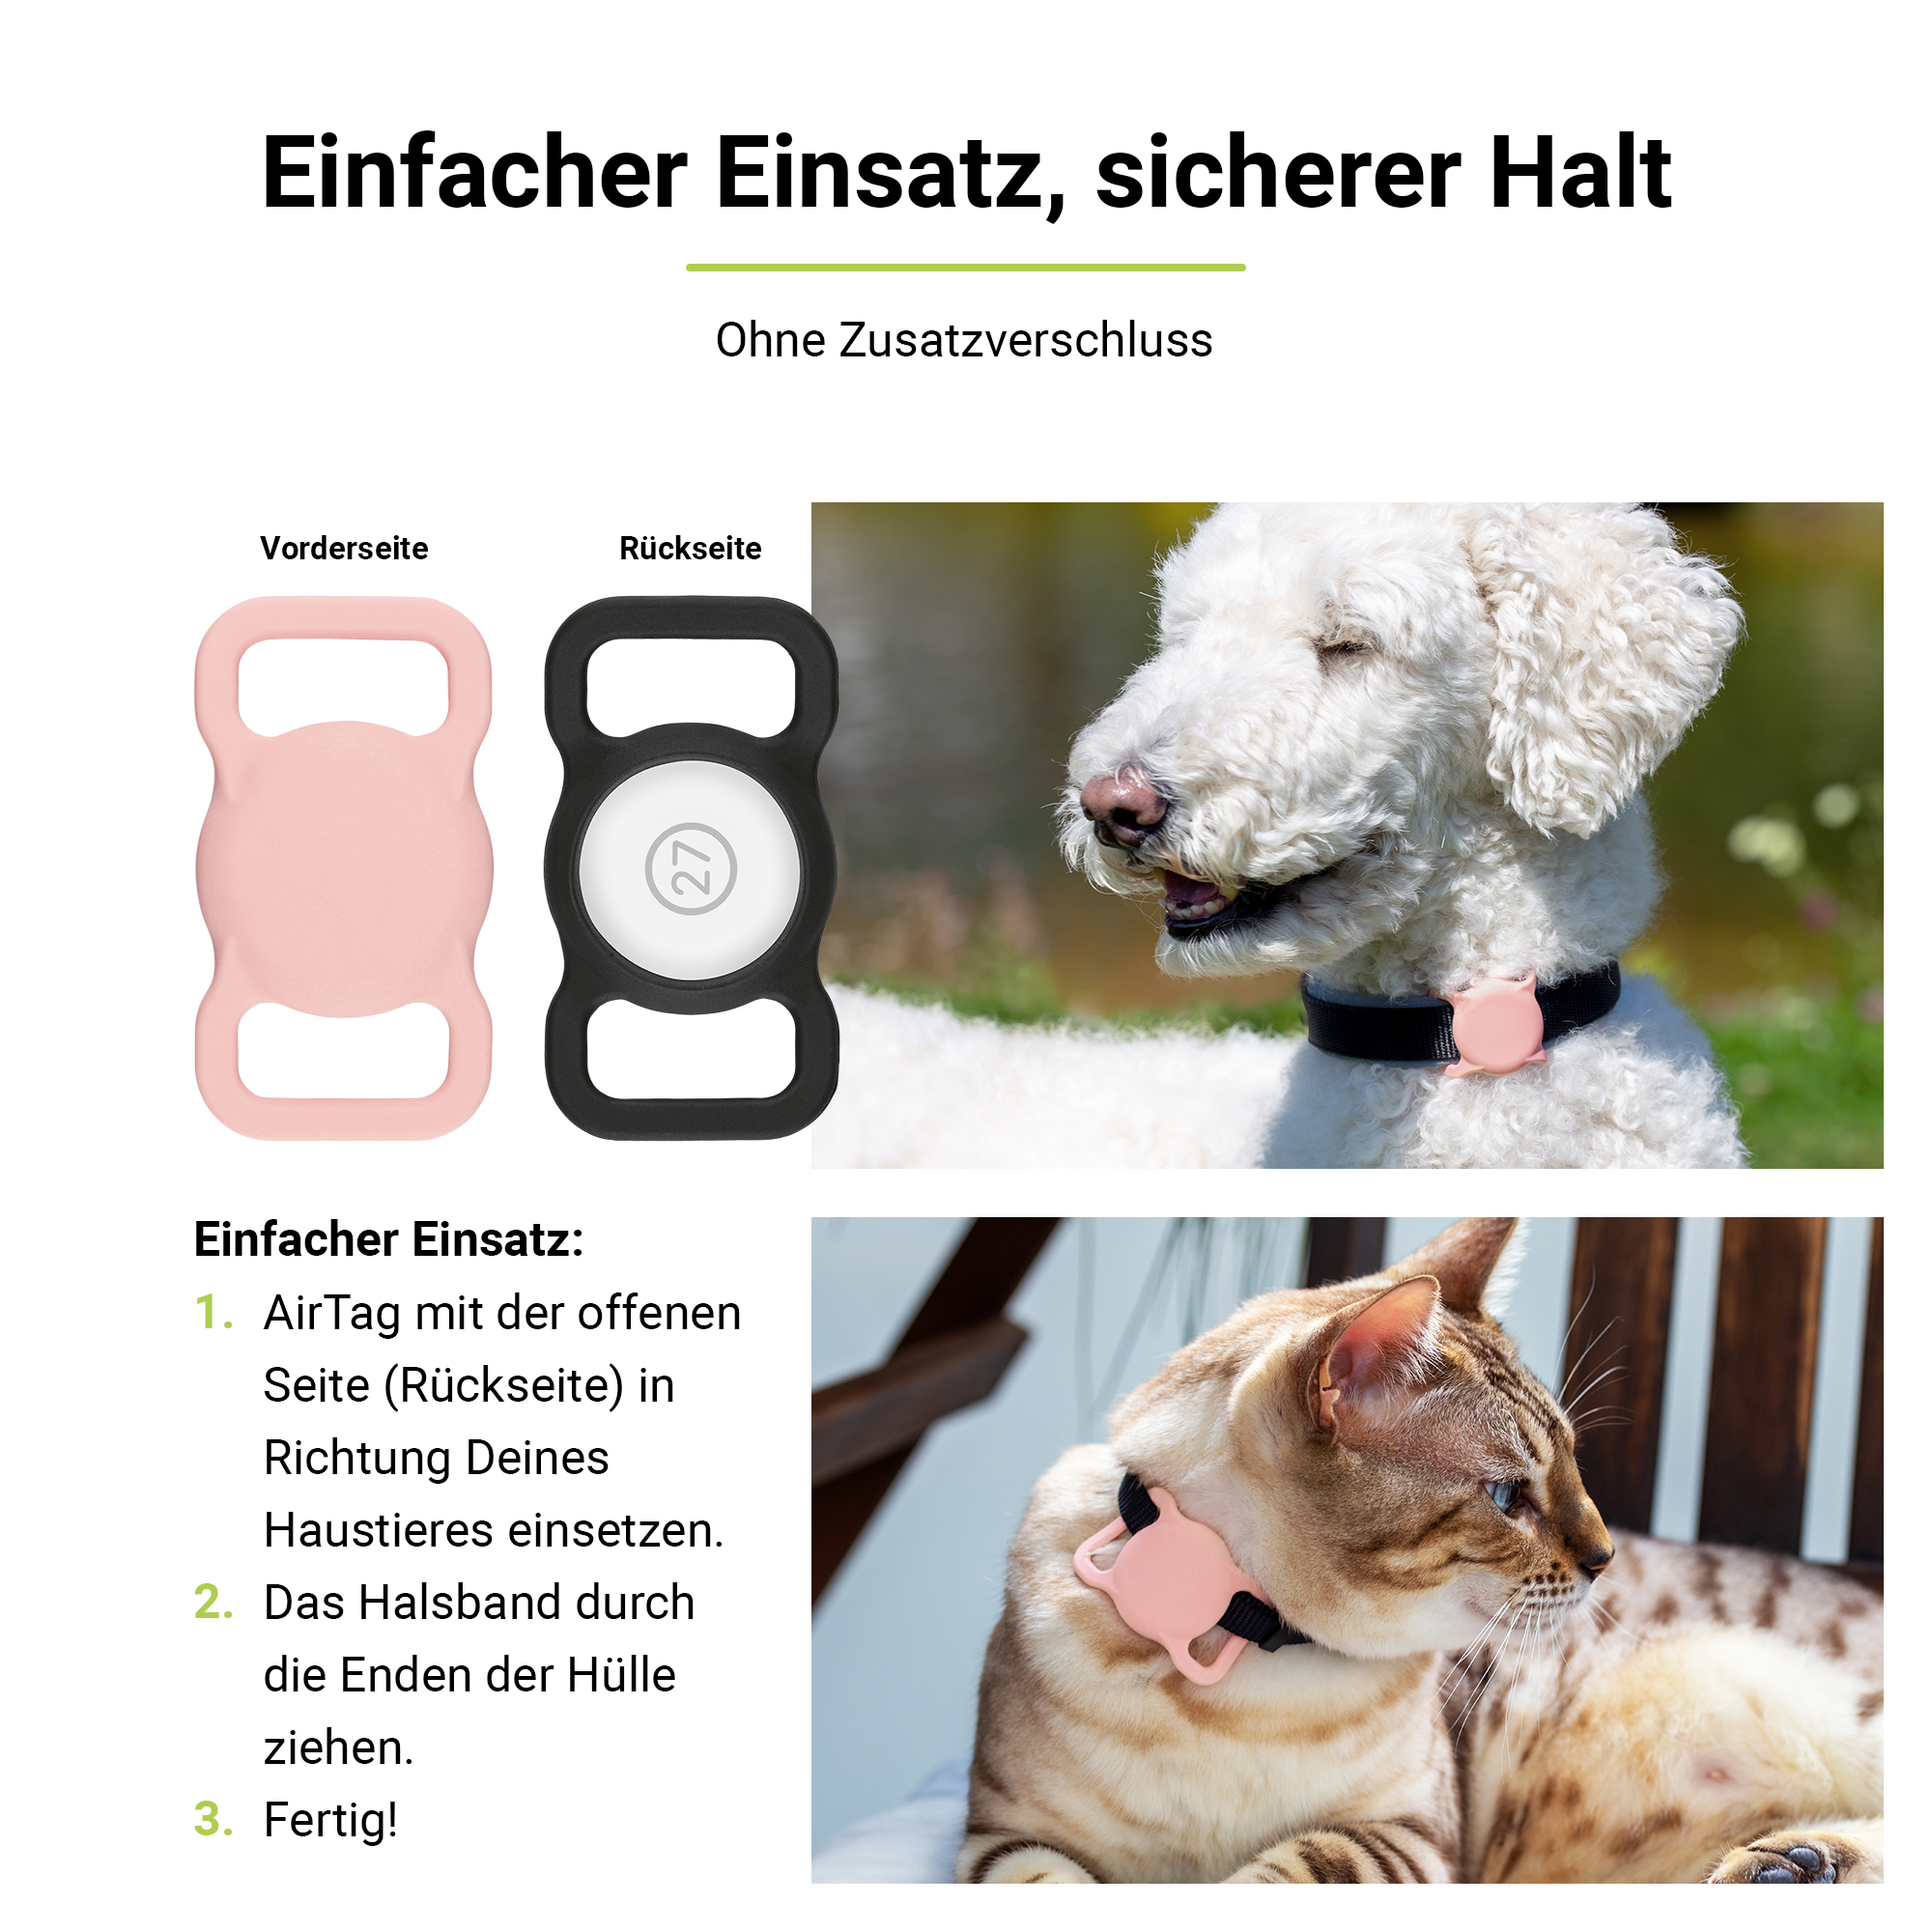 ARTWIZZ PetStrap Befestigung von Apple Schwarz AirTag GPS-Tracker Halsband Pink als Halterung 